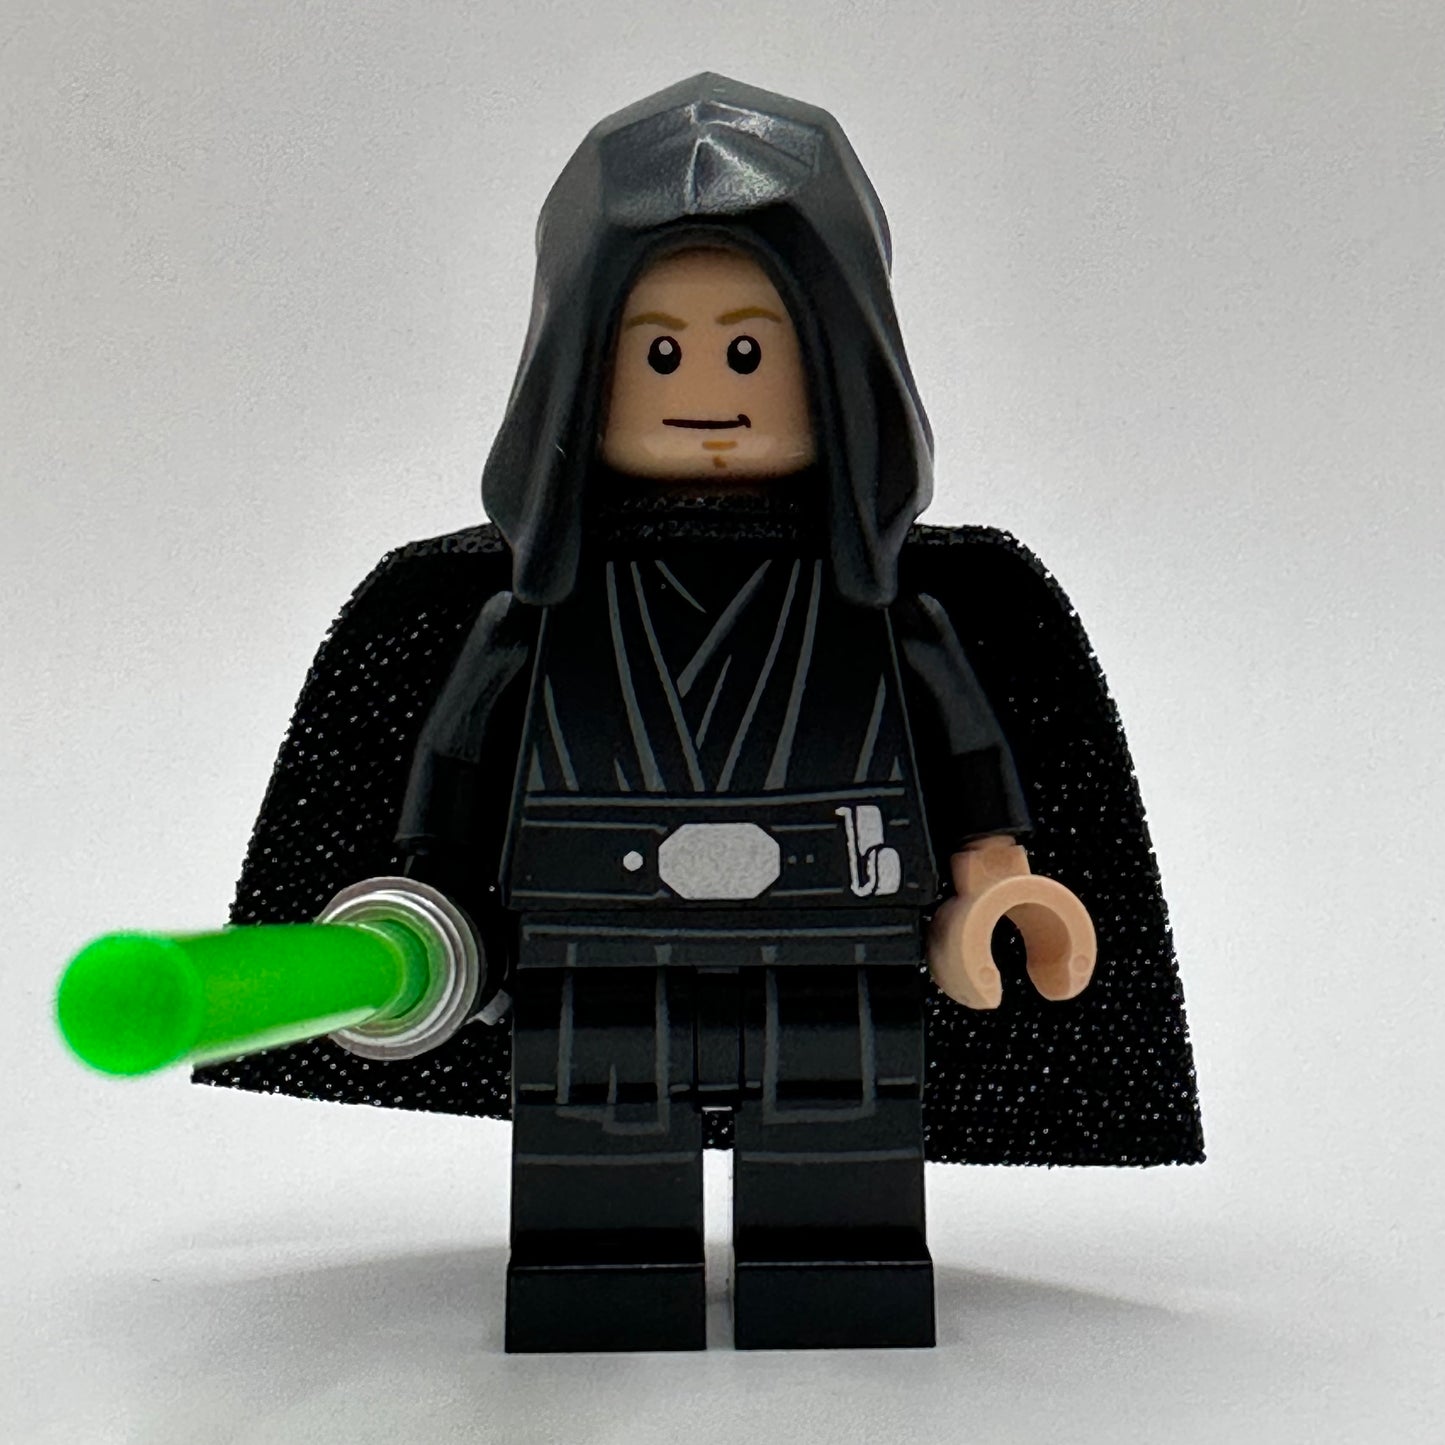 LEGO Luke Skywalker Minifigure [Jedi Knight]